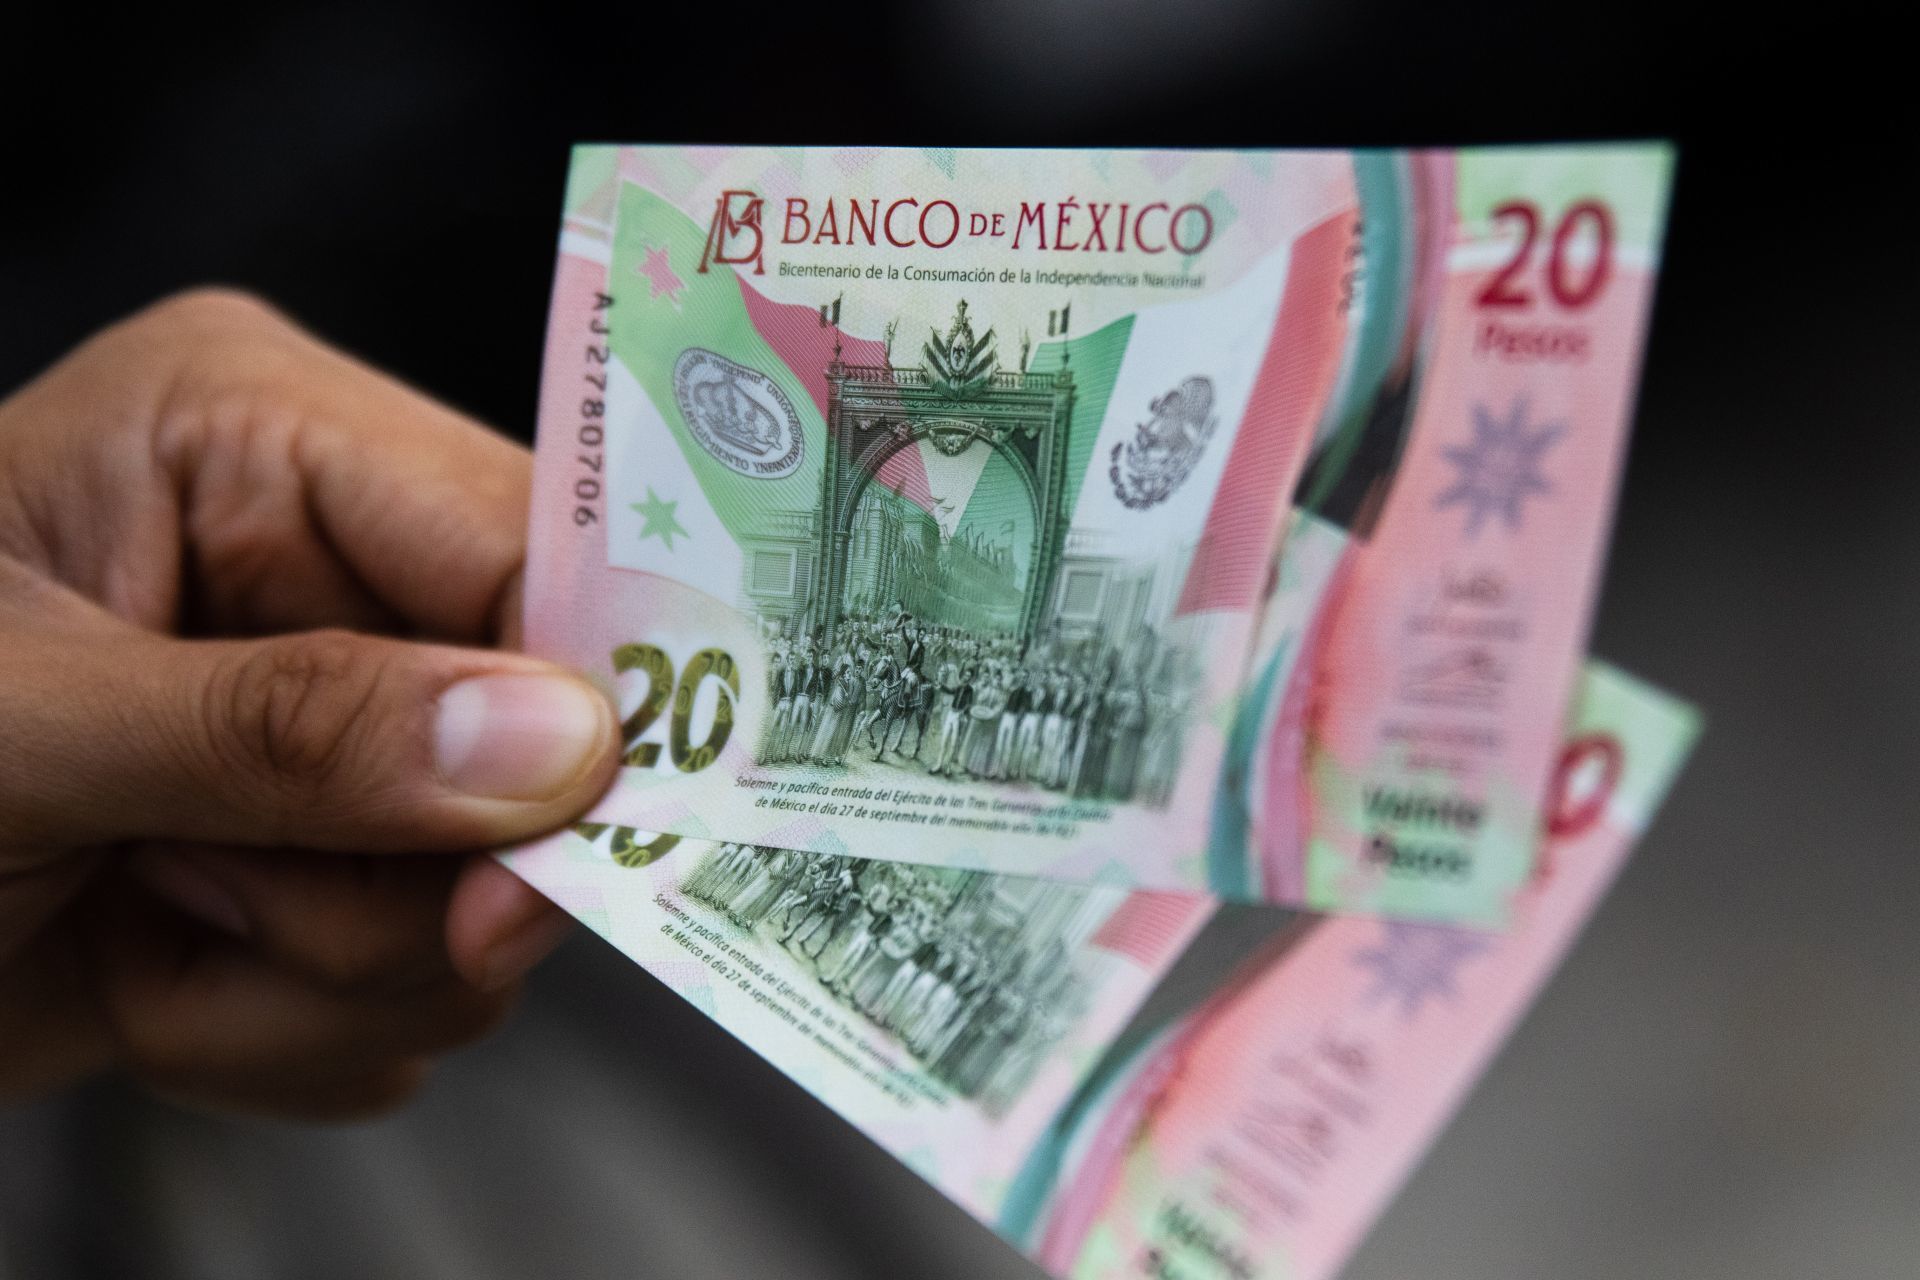 FRENTE de billetes falsos tamaño real del billete real para cortar  calcomanías de uñas al agua -  México